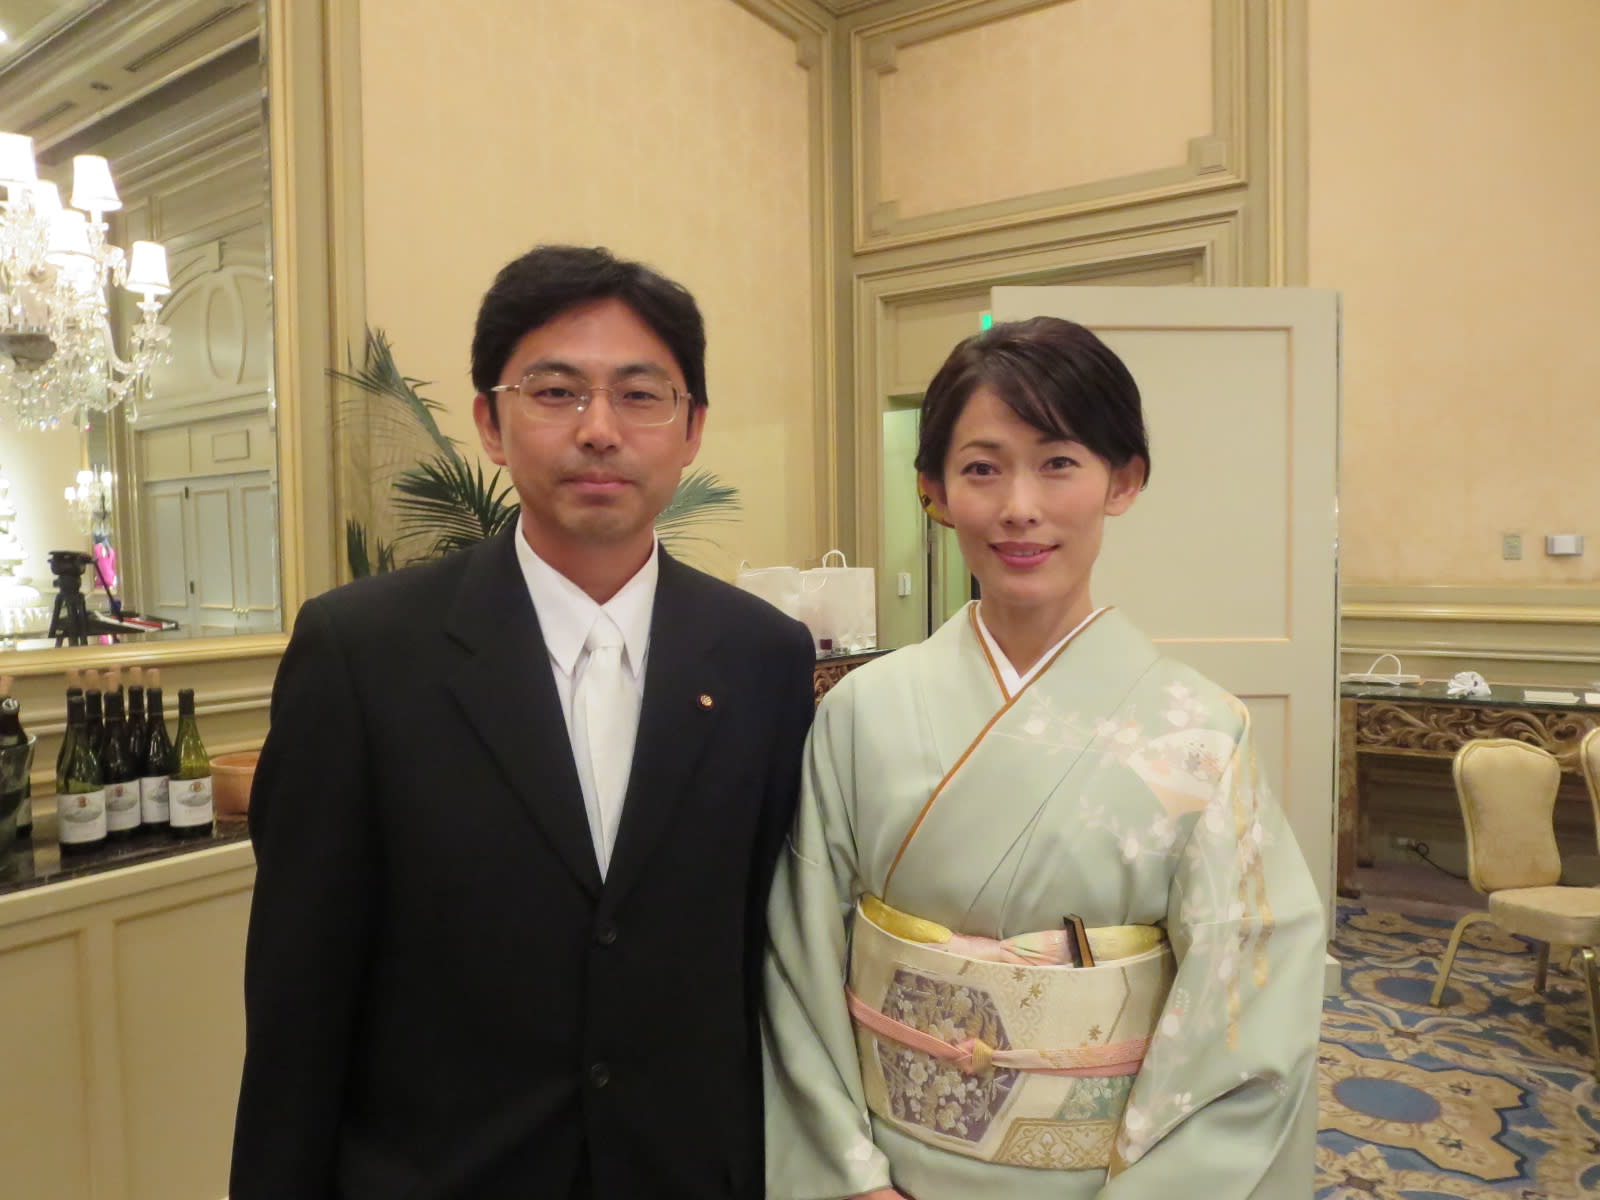 ９月７日 本日は松本洋平衆議院議員の結婚披露宴に出席しました 石井伸之の国立市議会議員日記 自由民主党会派所属